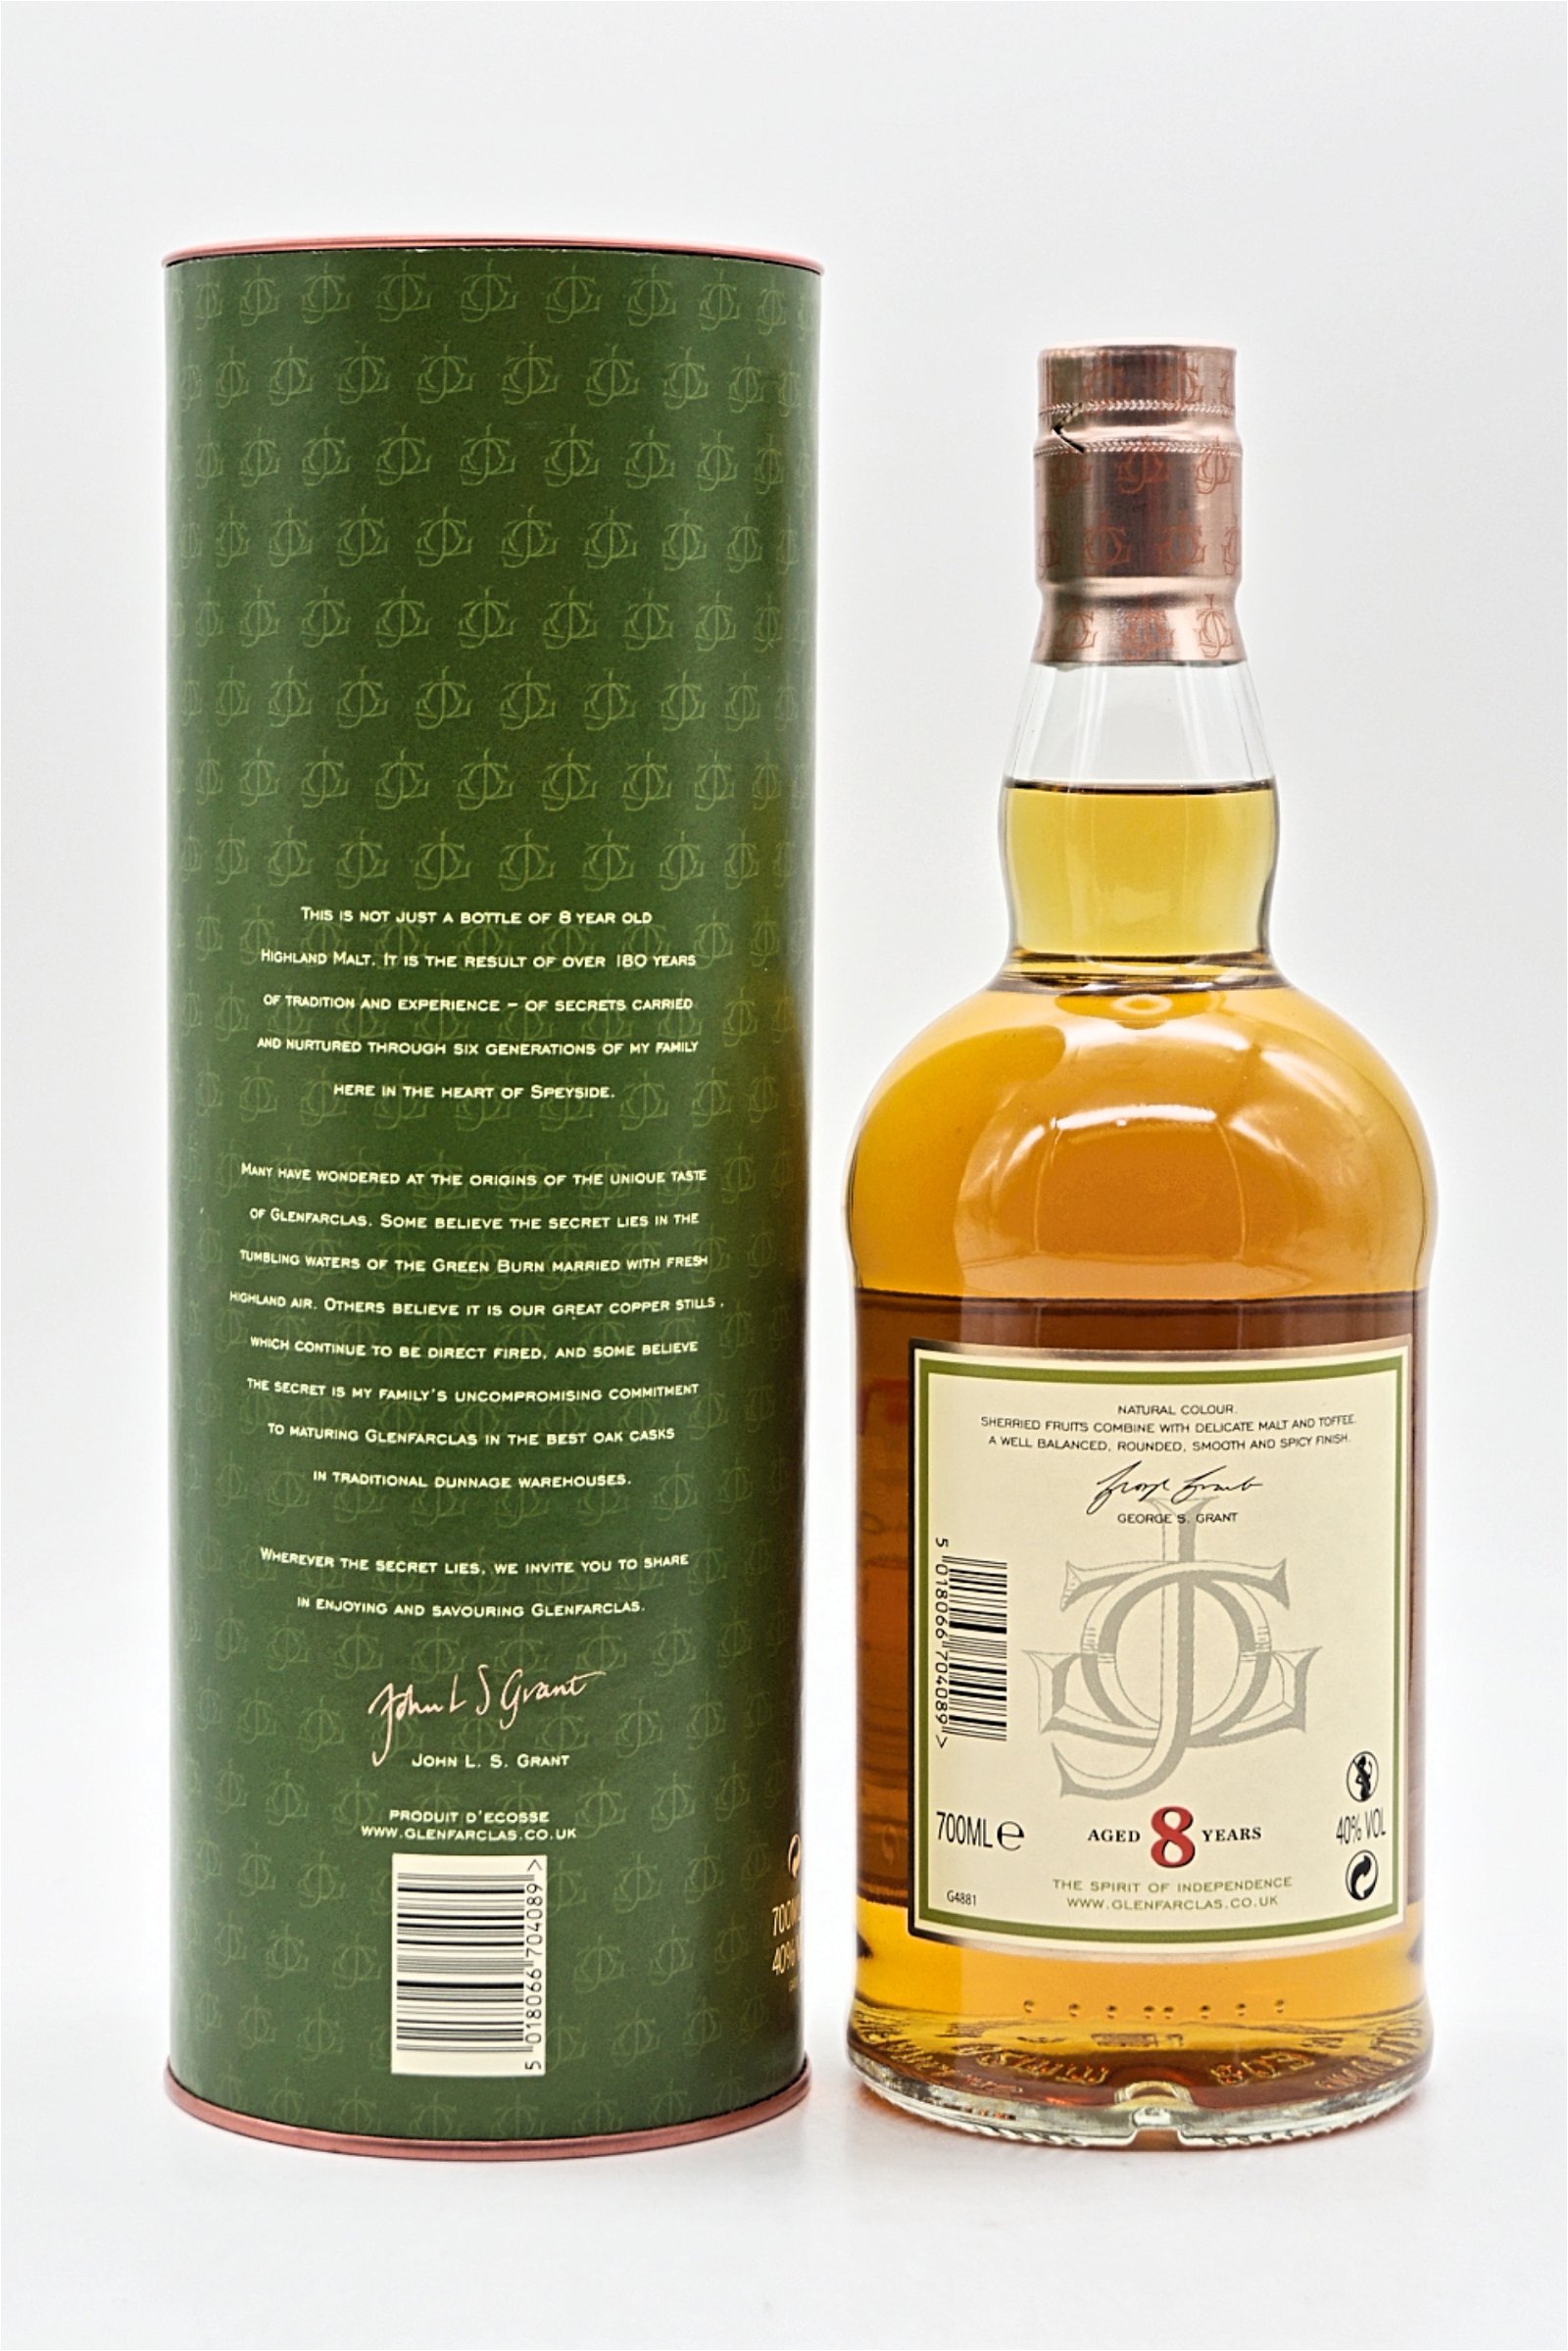 Glenfarclas 8 Jahre Highland Single Malt Scotch Whisky